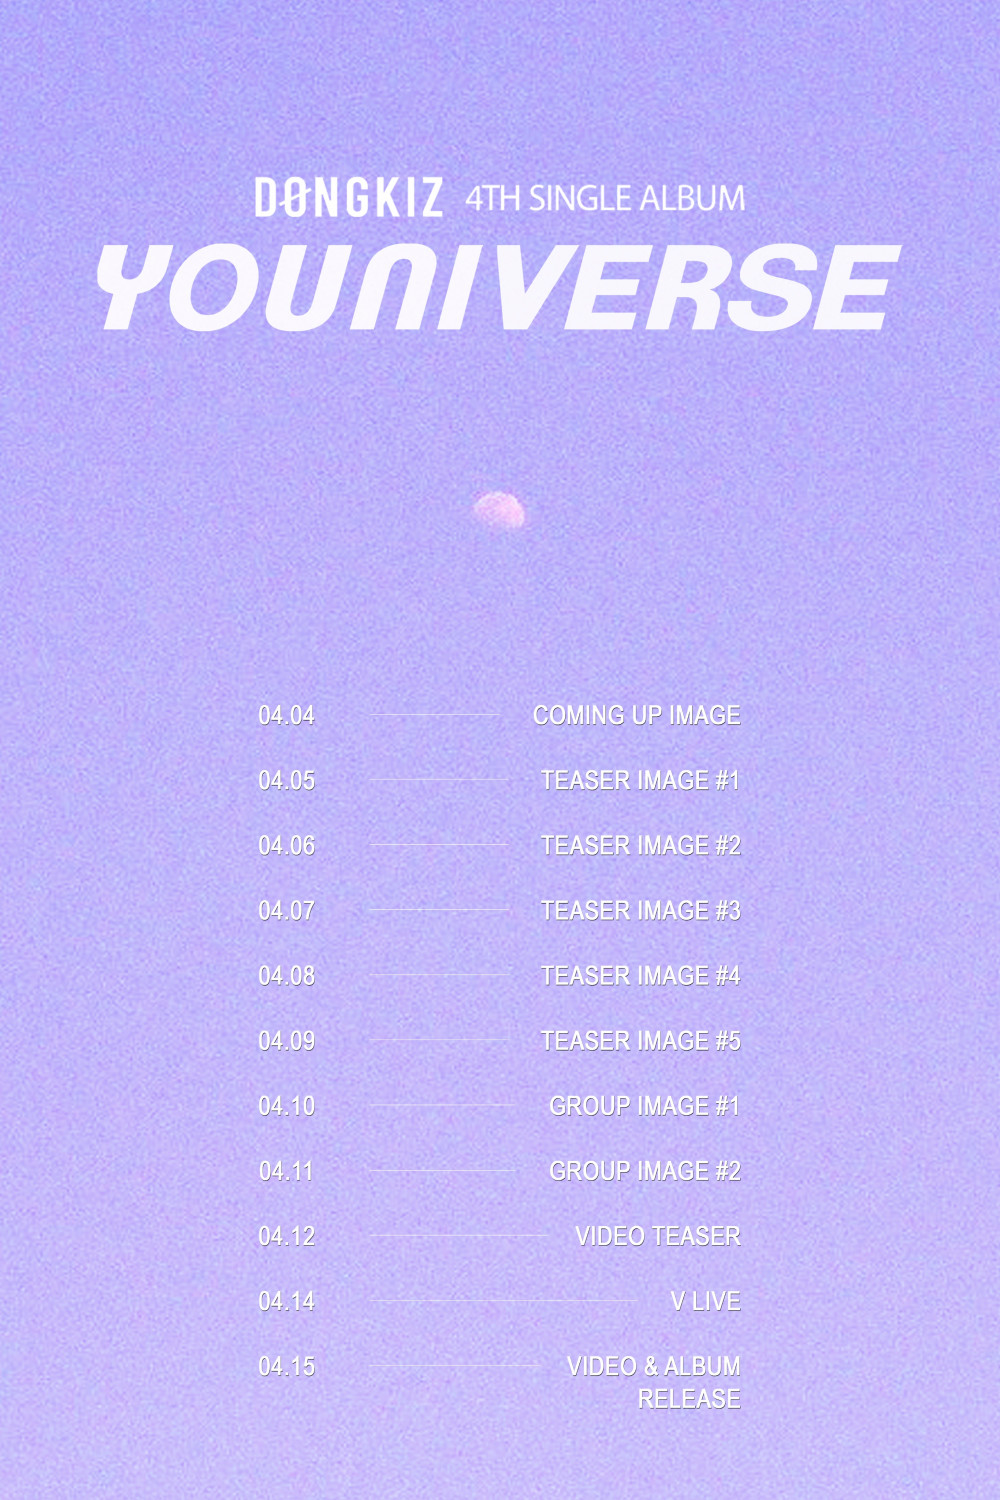 [Камбэк] DONGKIZ альбом "Youniverse": музыкальный клип "Youniverse"